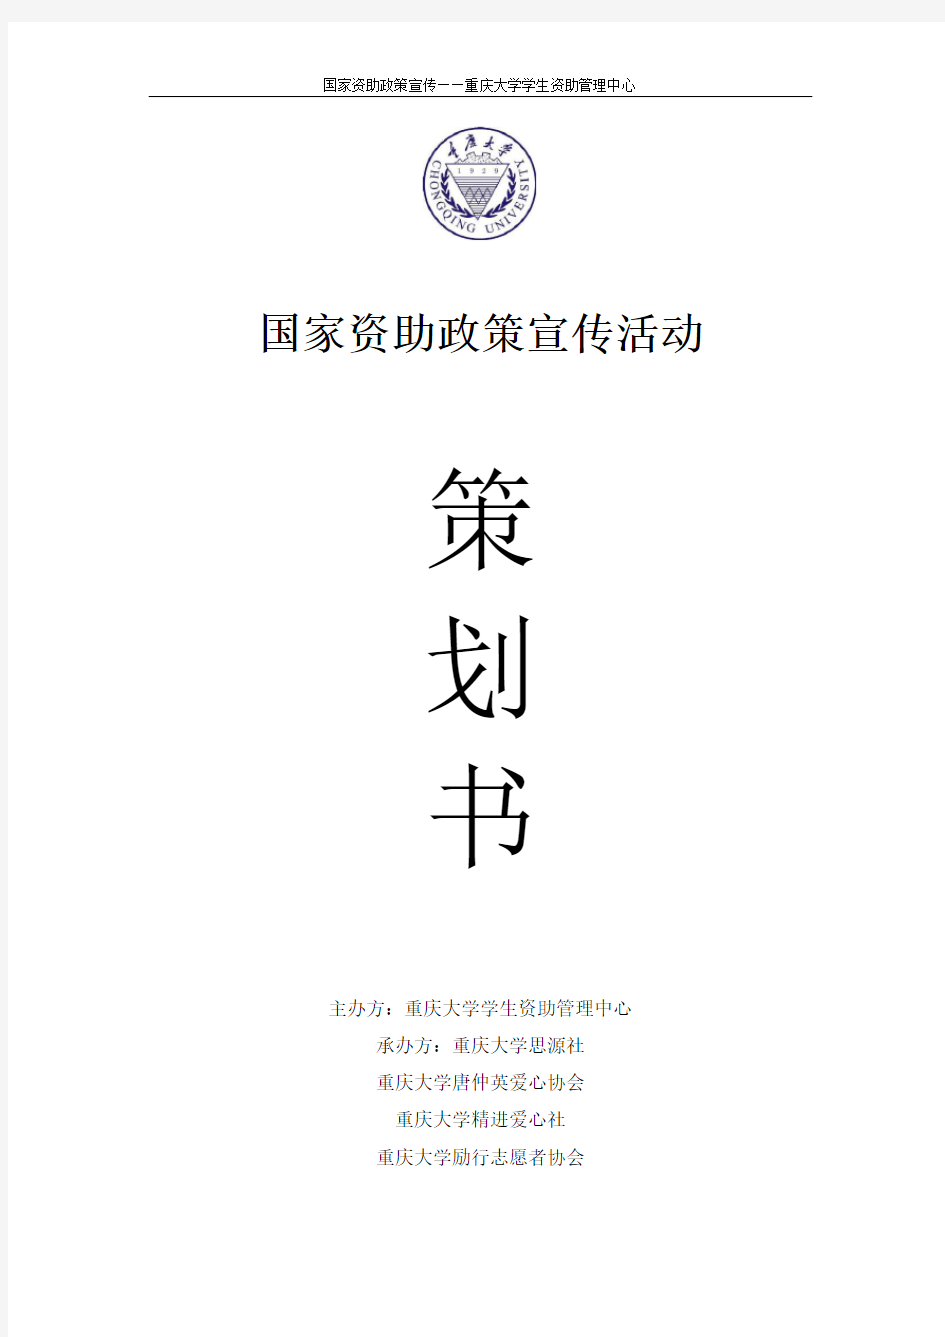 重庆大学资助政策宣传活动策划书